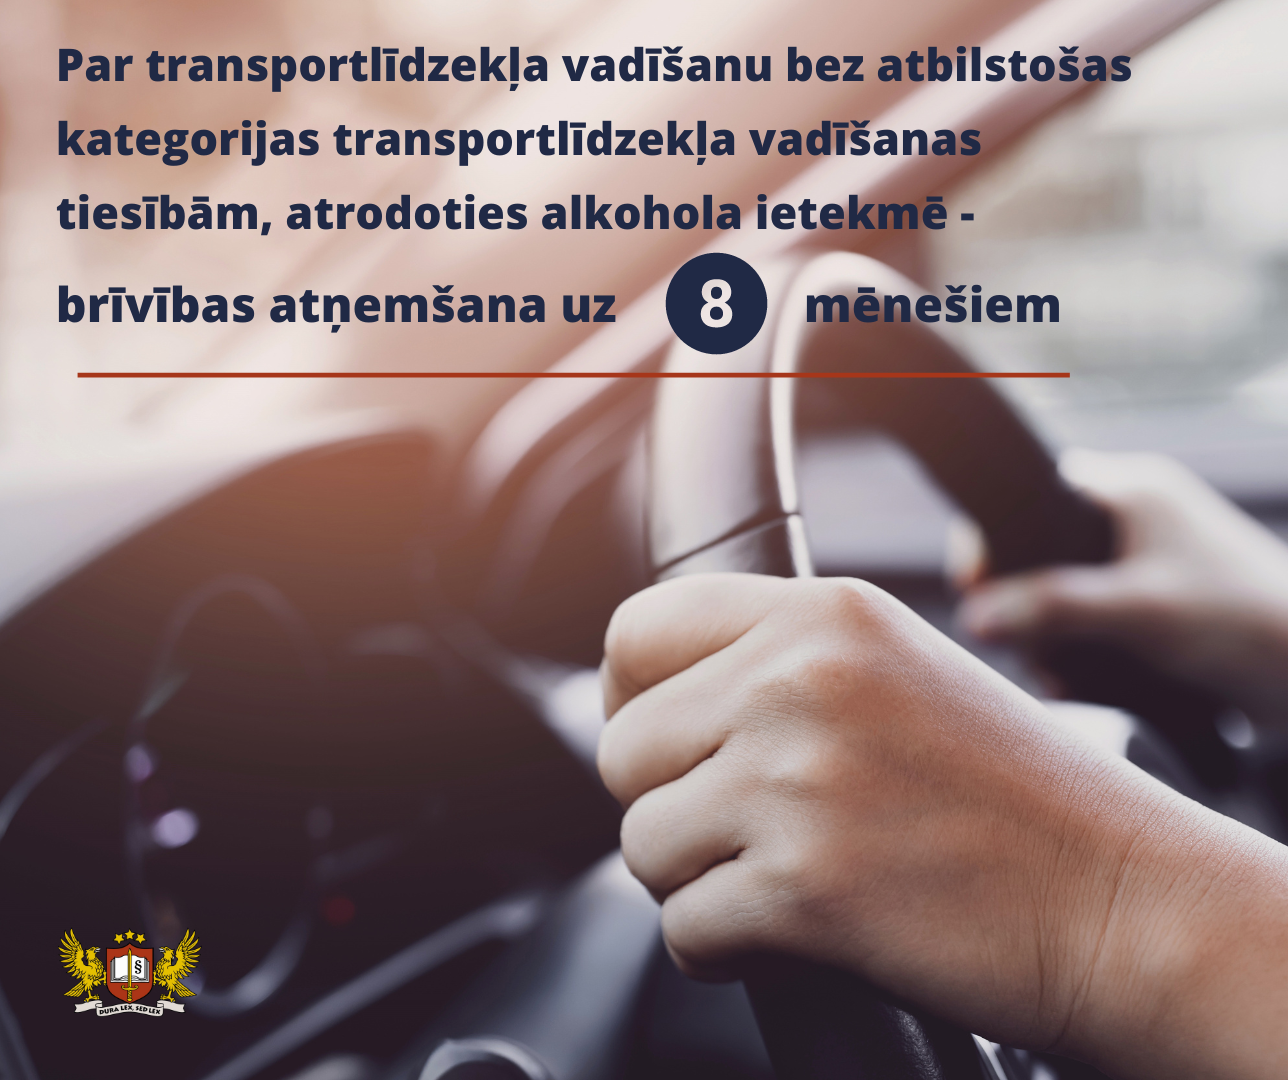 Attēls: Prokuratūra vienošanās procesa kārtībā tiesai nodevusi krimināllietu par braukšanu reibumā bez atbilstošas kategorijas transportlīdzekļa vadīšanas tiesībām